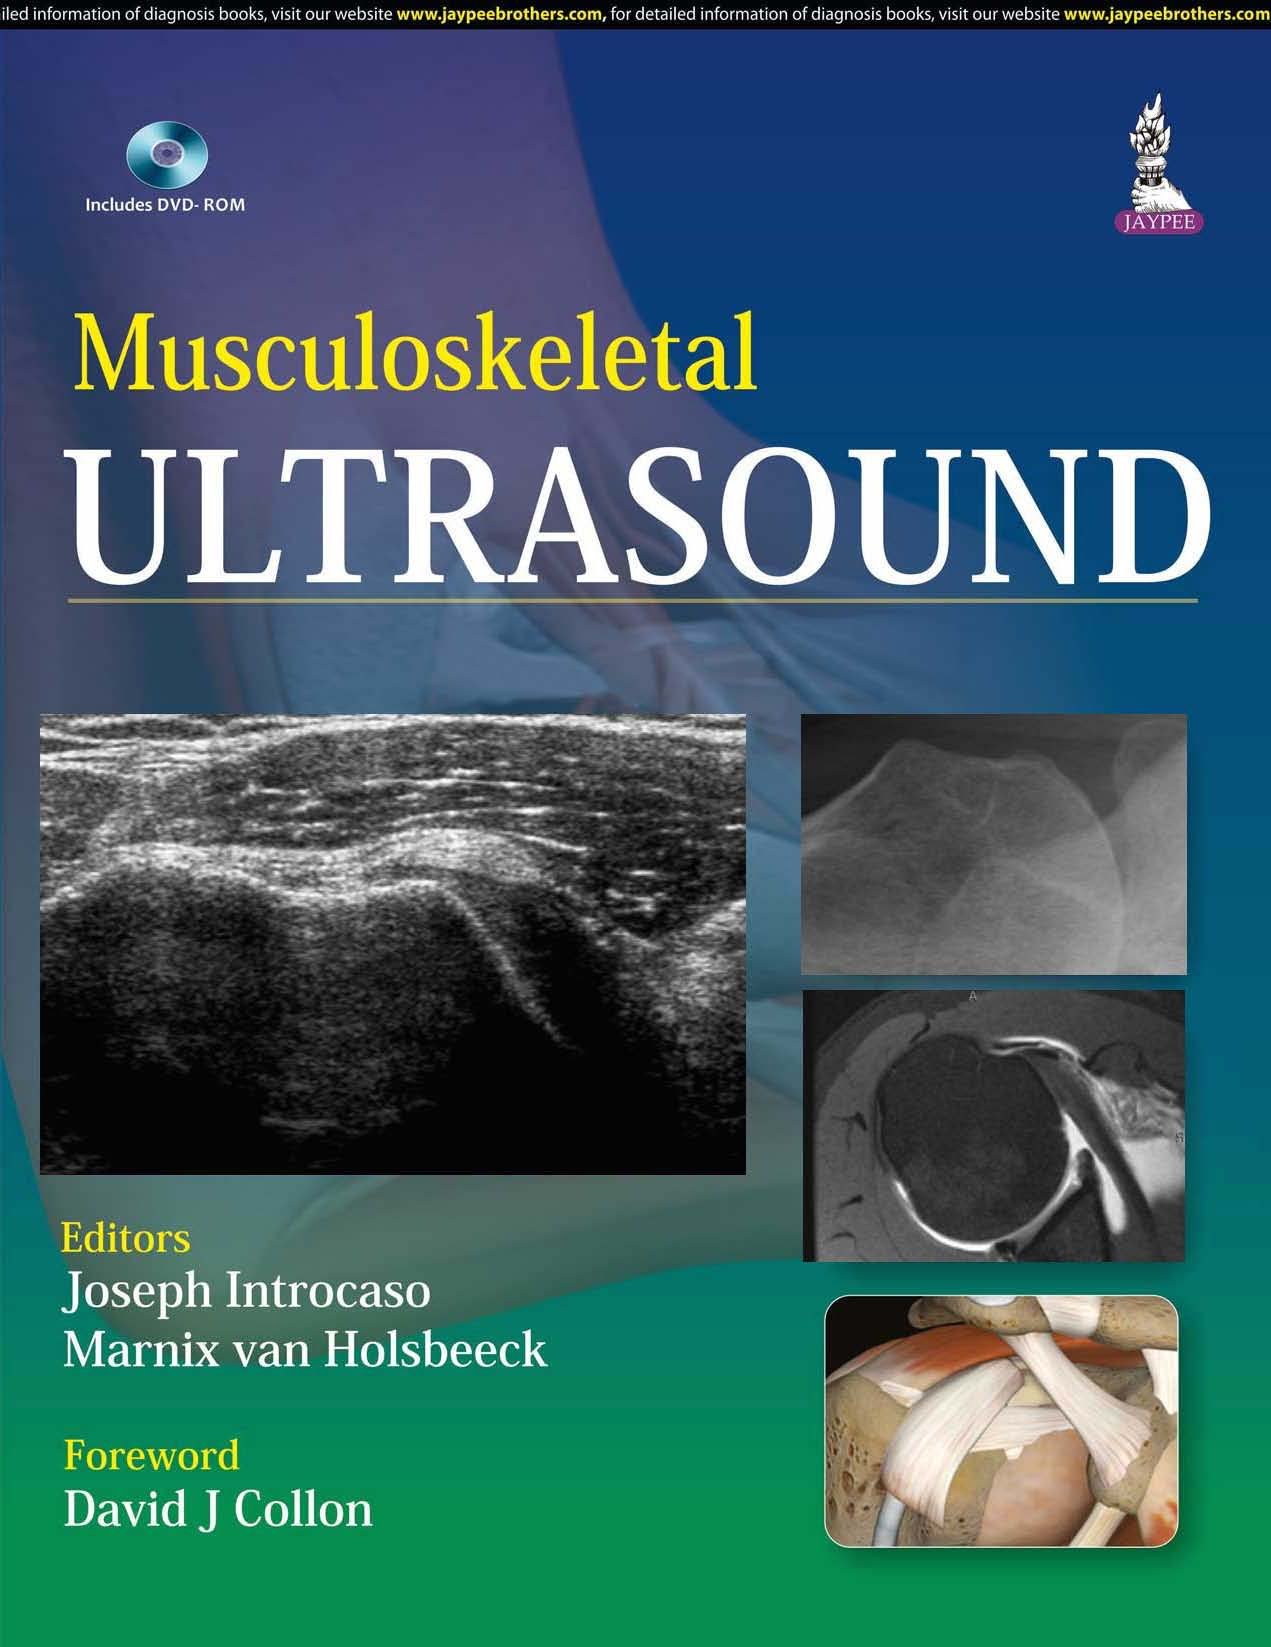 Libri Musculoskeletal Ultrasound Hb NUOVO SIGILLATO, EDIZIONE DEL 12/02/2016 SUBITO DISPONIBILE